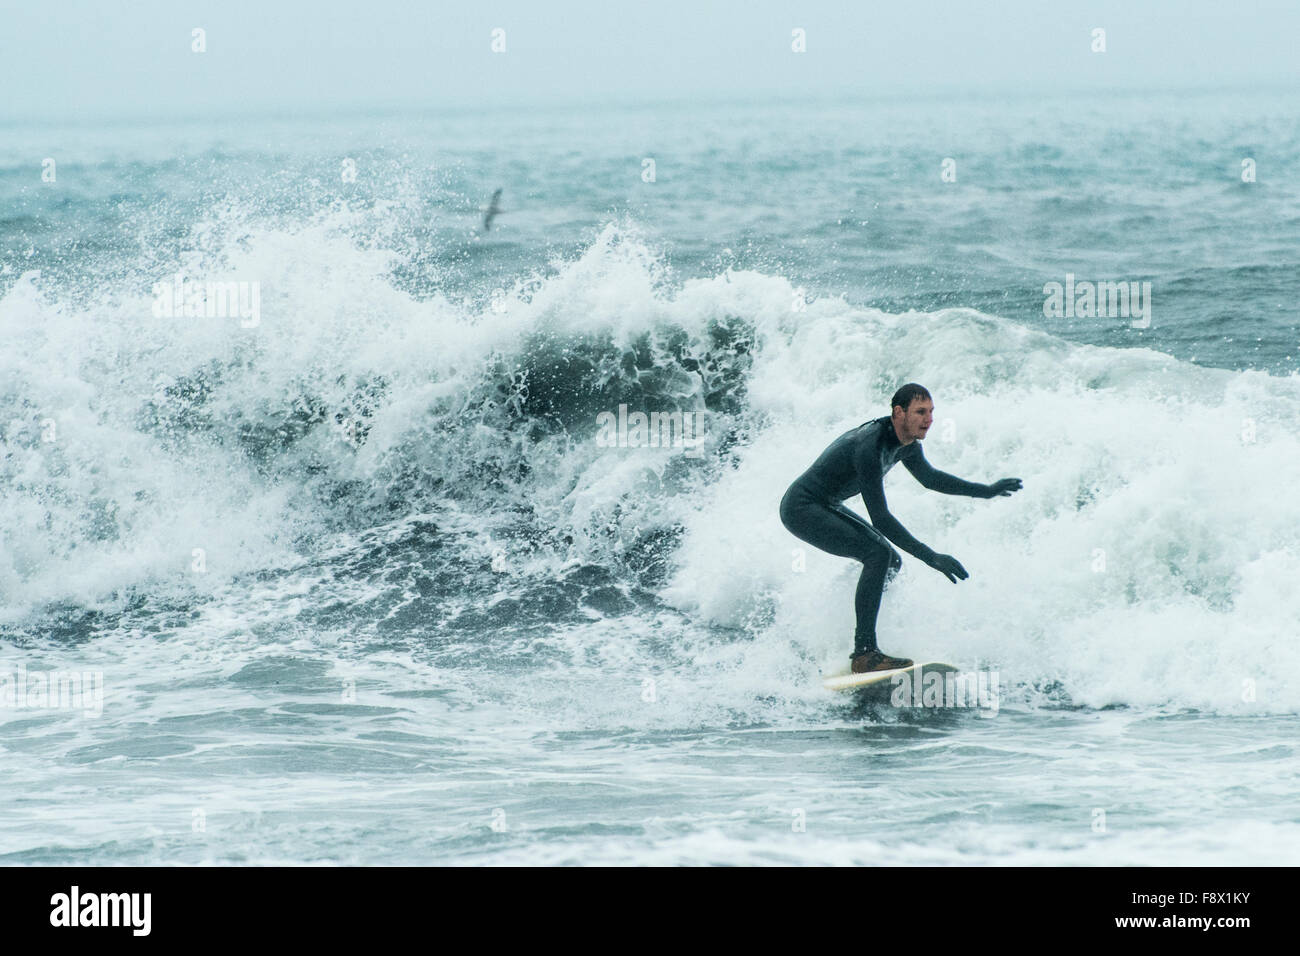 Fuera de Vik. Hombre olas para practicar surfing en la playa de arena negra. Foto de stock